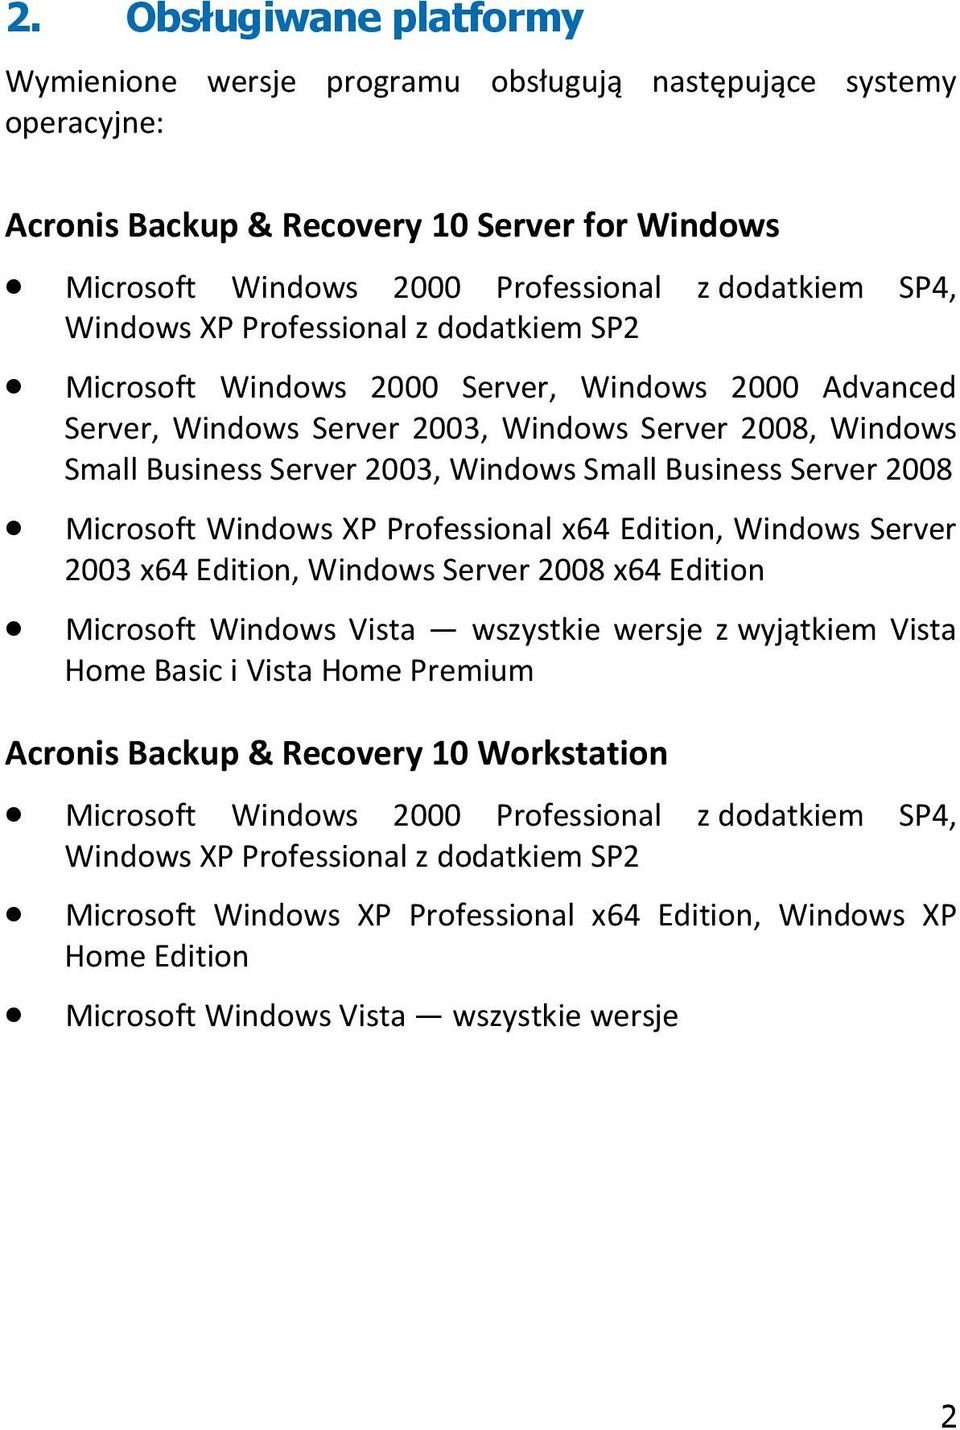 Business Server 2008 Microsoft Windows XP Professional x64 Edition, Windows Server 2003 x64 Edition, Windows Server 2008 x64 Edition Microsoft Windows Vista wszystkie wersje z wyjątkiem Vista Home